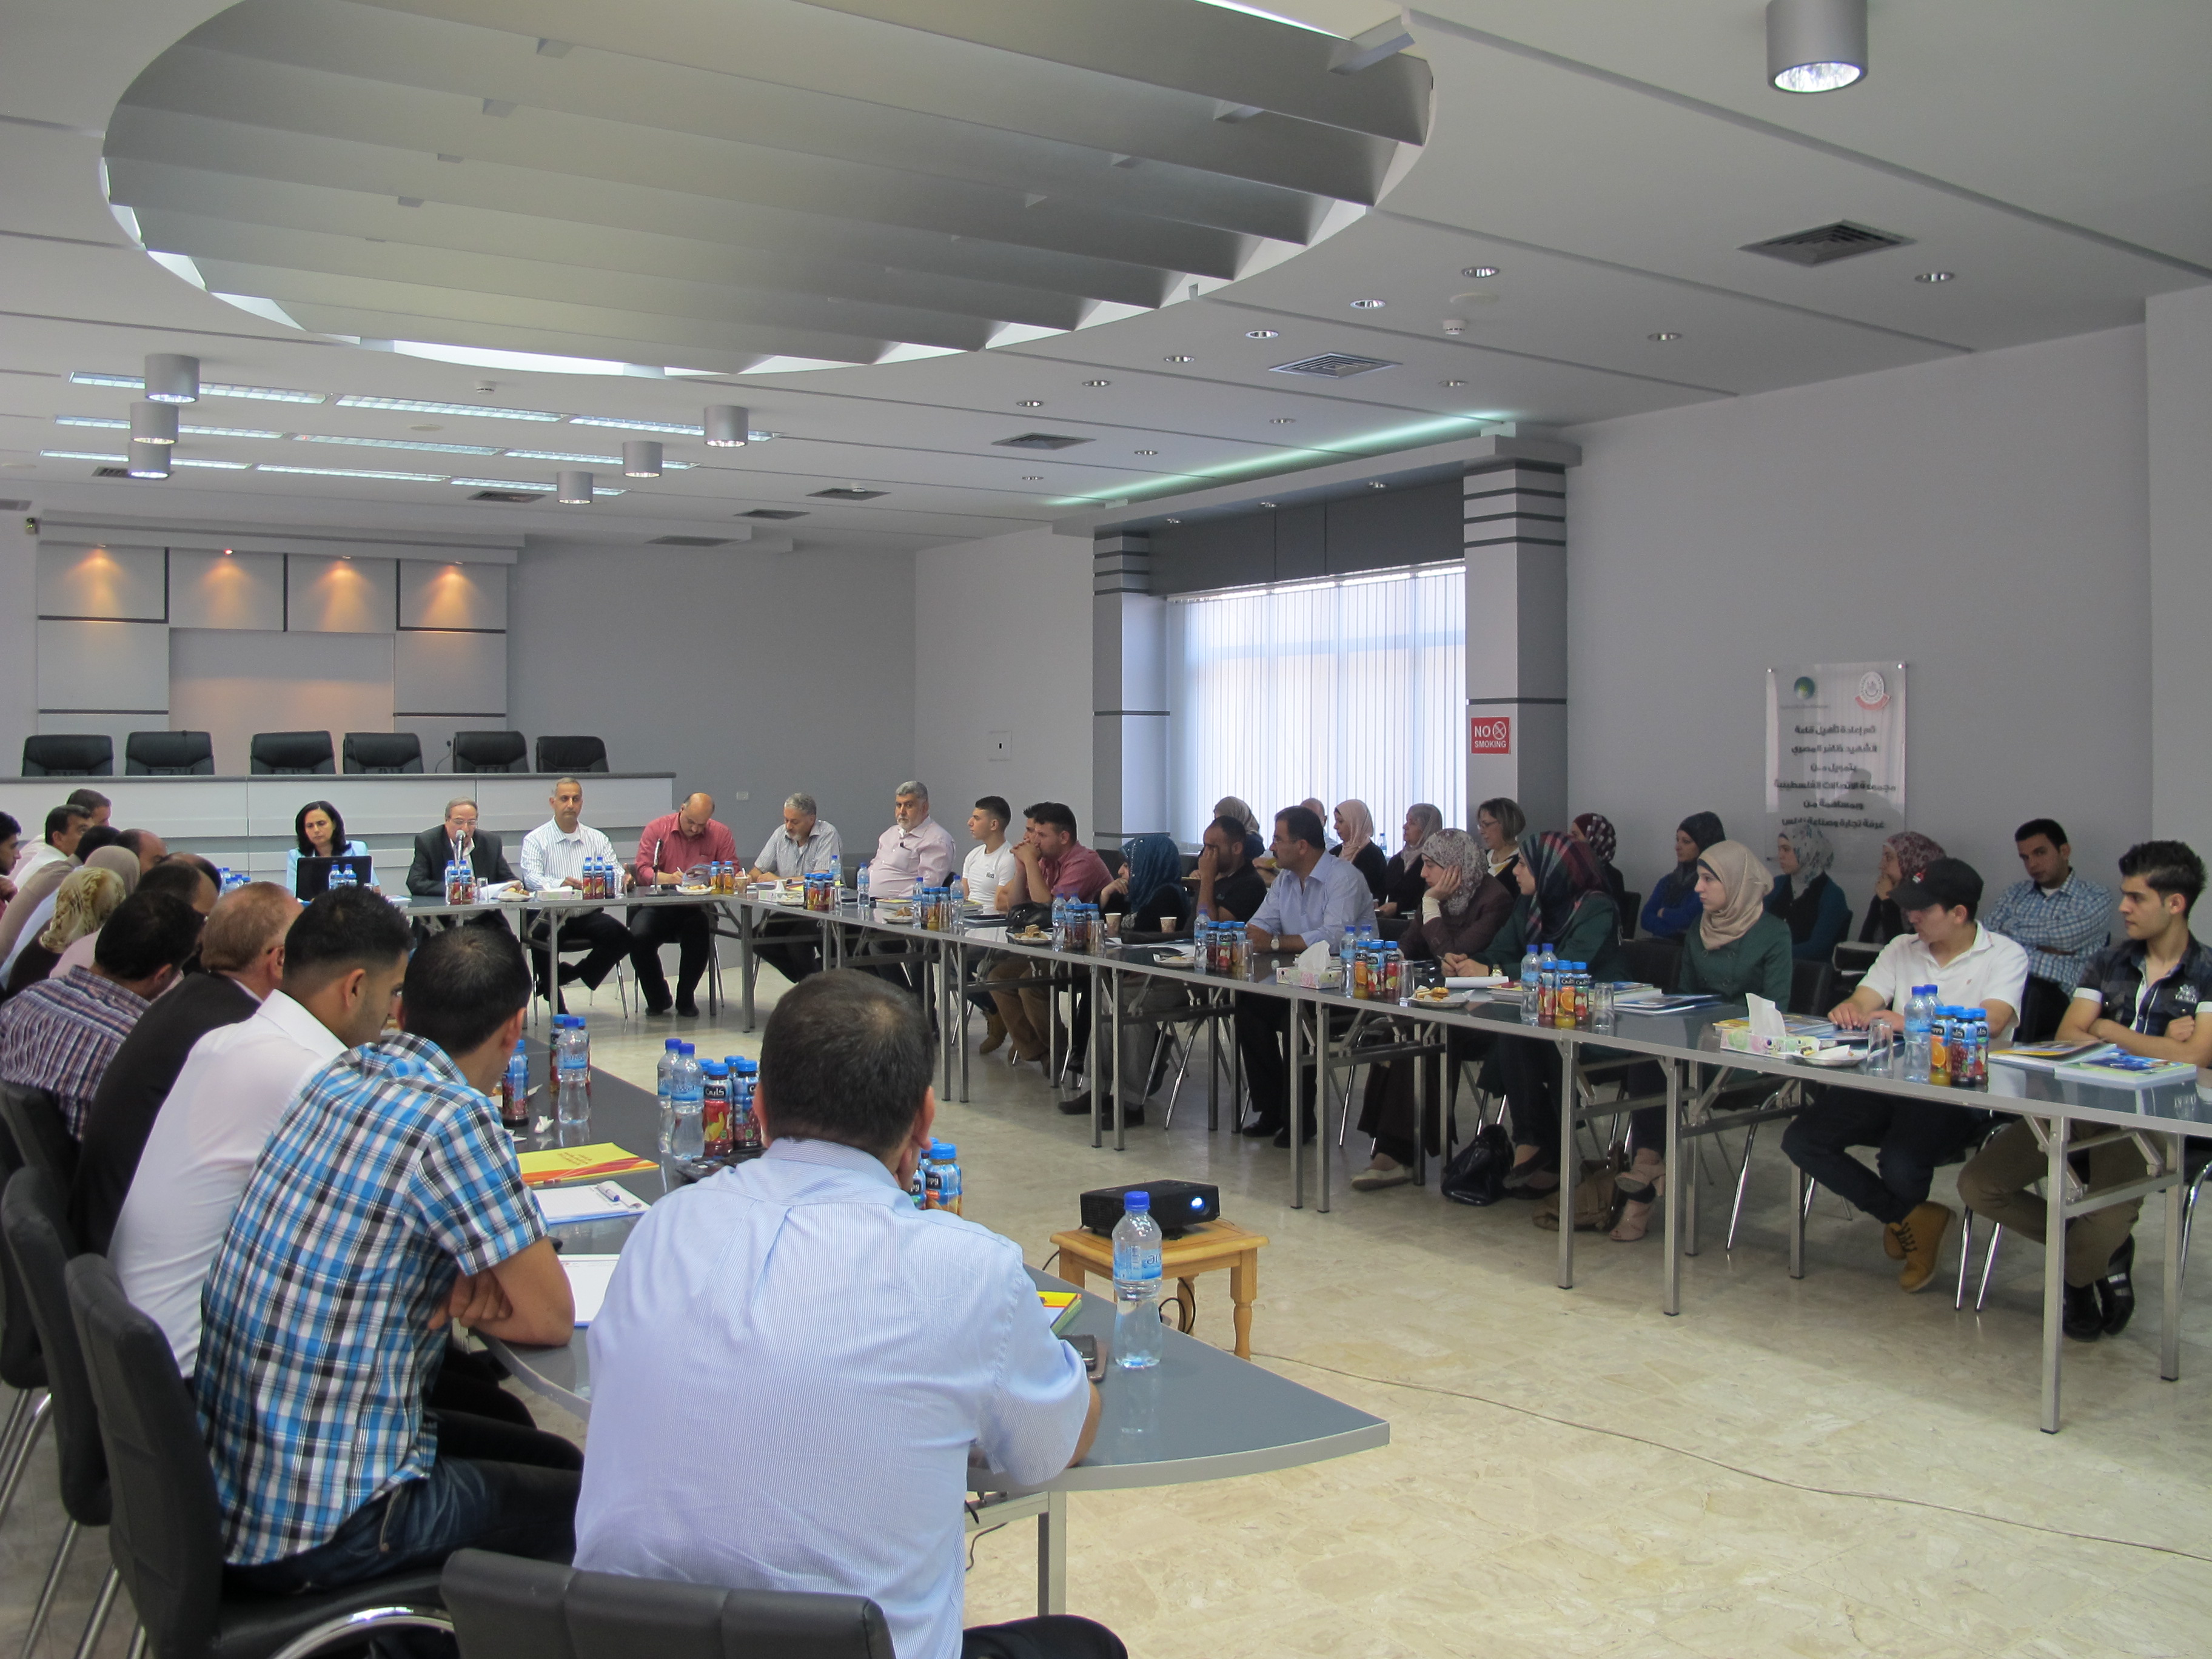 في قاعة غرفة تجارة وصناعة نابلس   المشروع البلجيكي لدعم التعليم والتدريب المهني والتقني في فلسطين يعقد ورشة عمل حول دراسة الاحتياجات التدريبية الثانية 30/6/2013